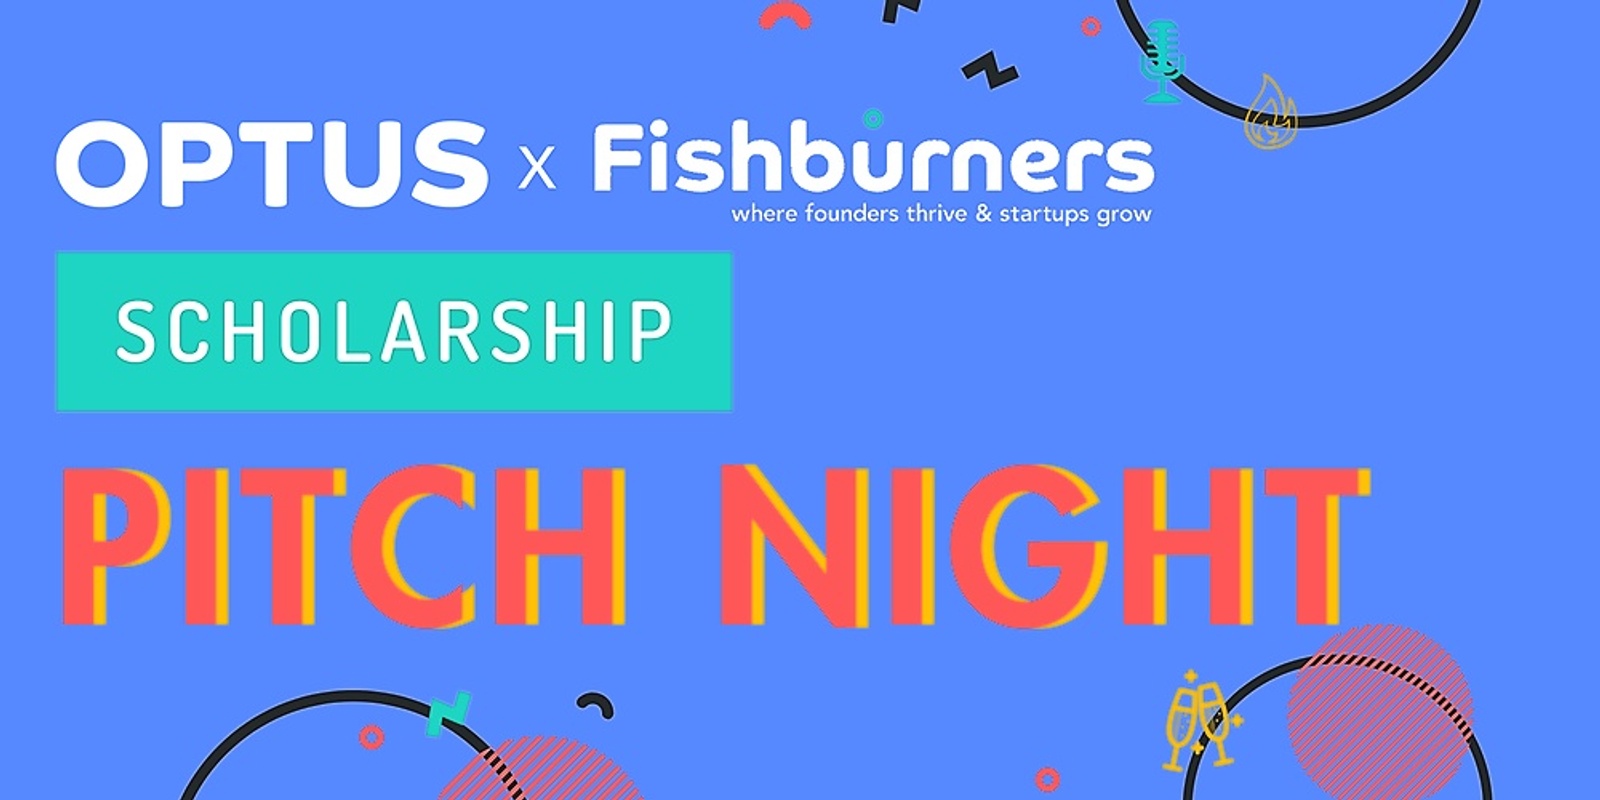 Optus Fishburners Scholarship Pitch Night